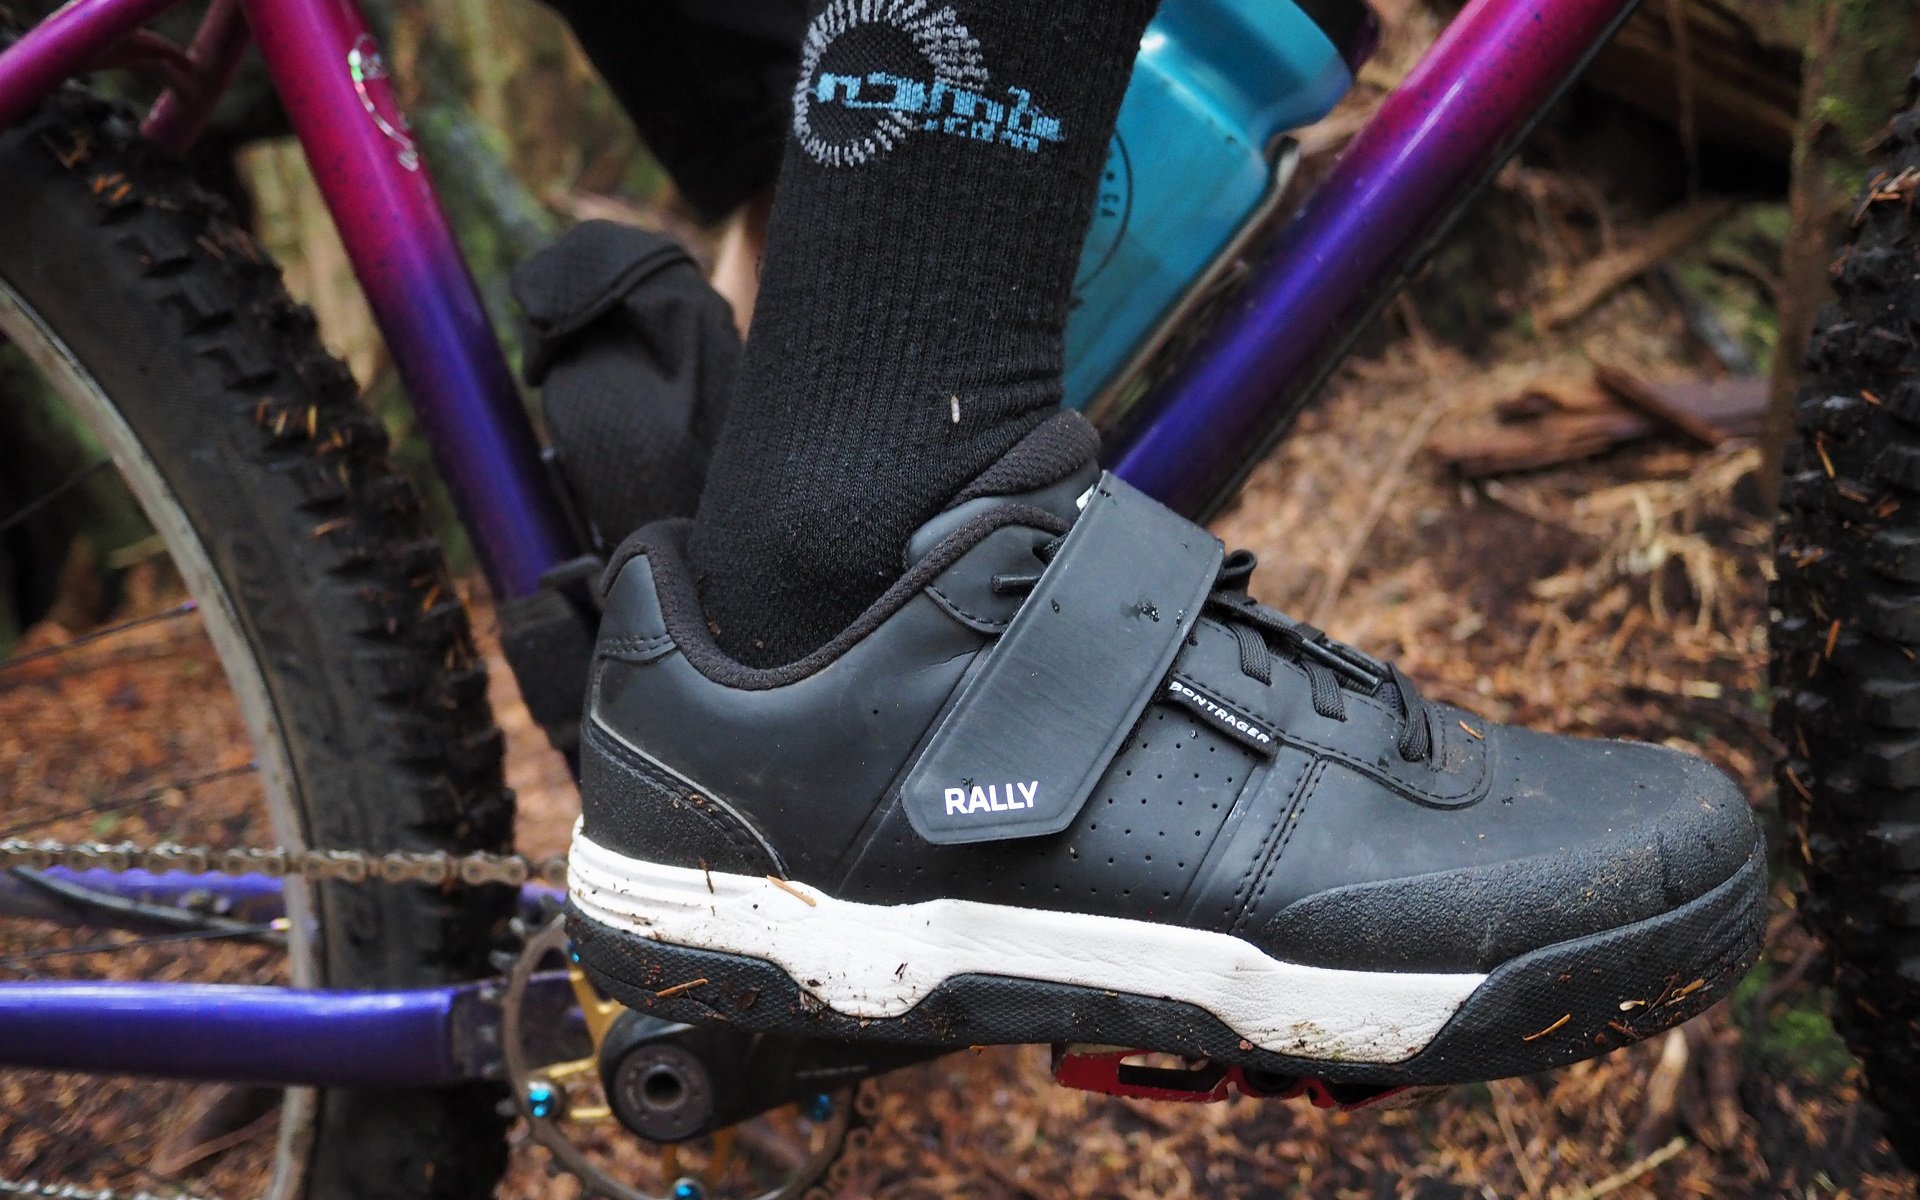 mountain biking clip in shoes